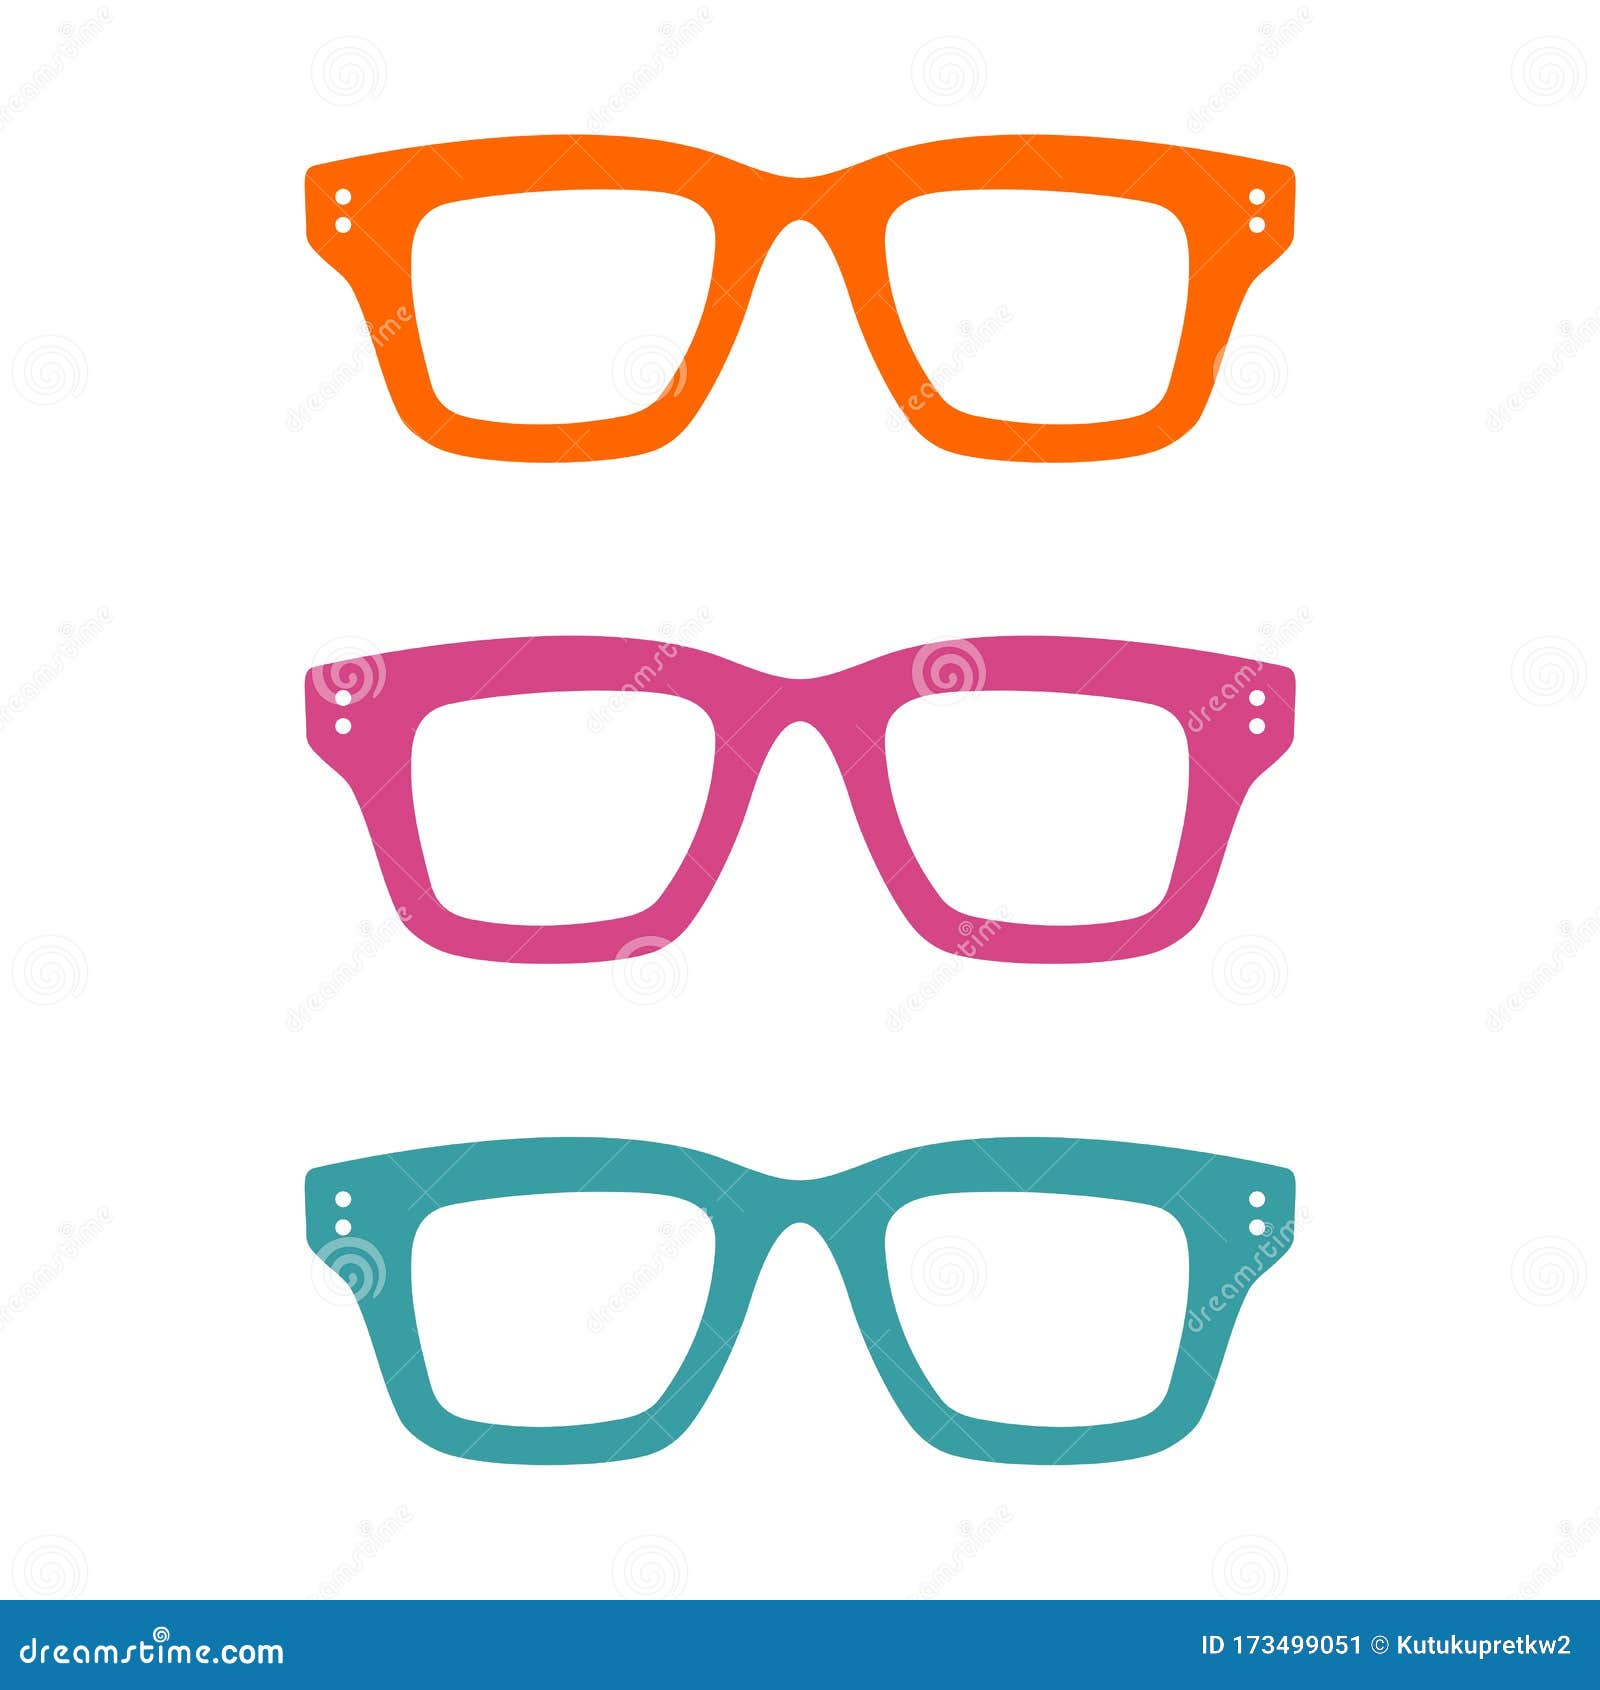 Download Colorful Geek Glasses Logo Template Illustration Design ...